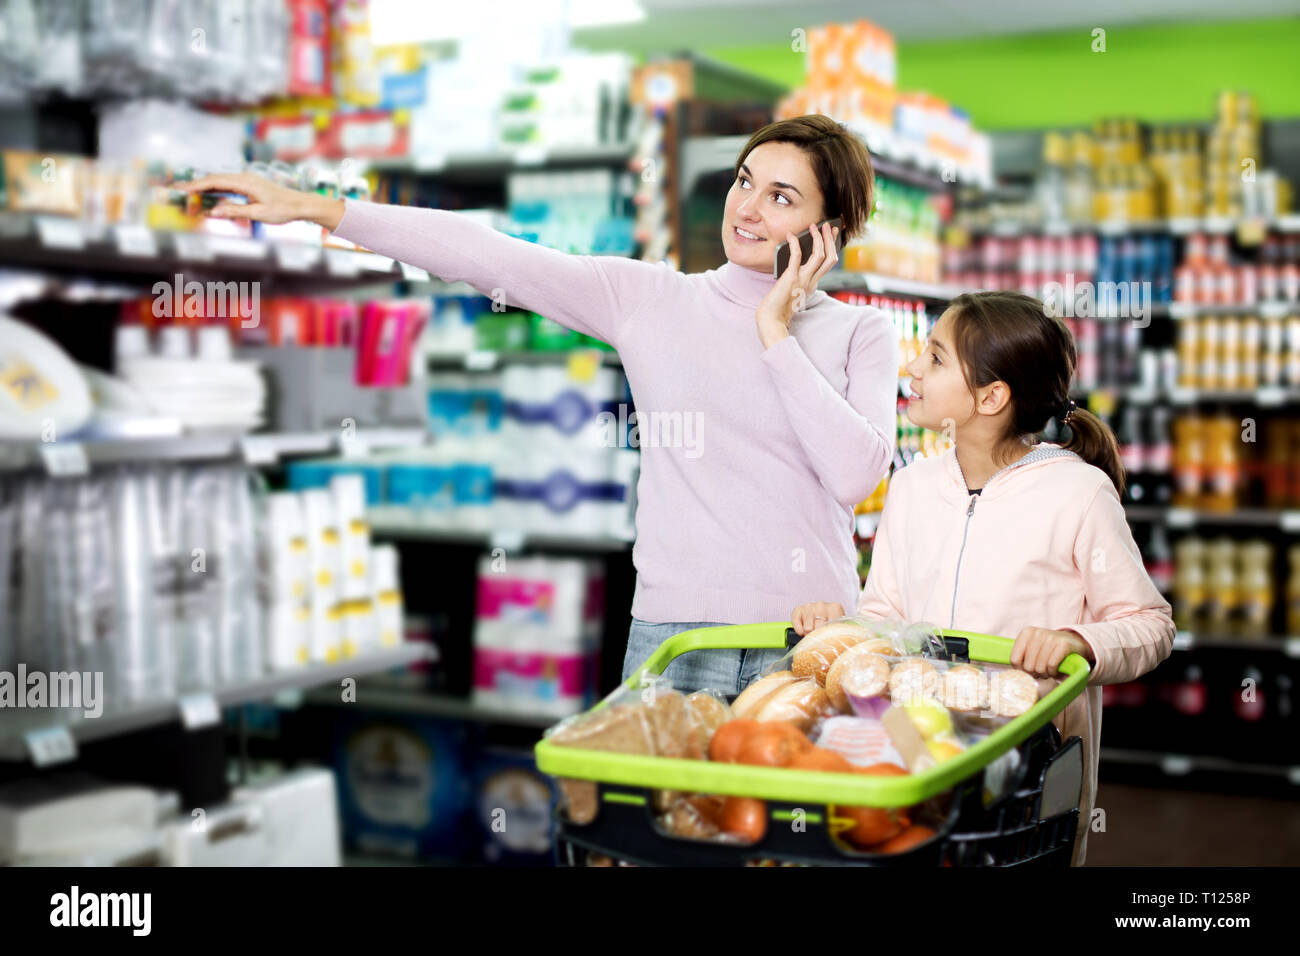 Glückliche junge Frau Kunde mit Mädchen telefonieren über das Einkaufen im Supermarkt zu konsultieren Stockfoto